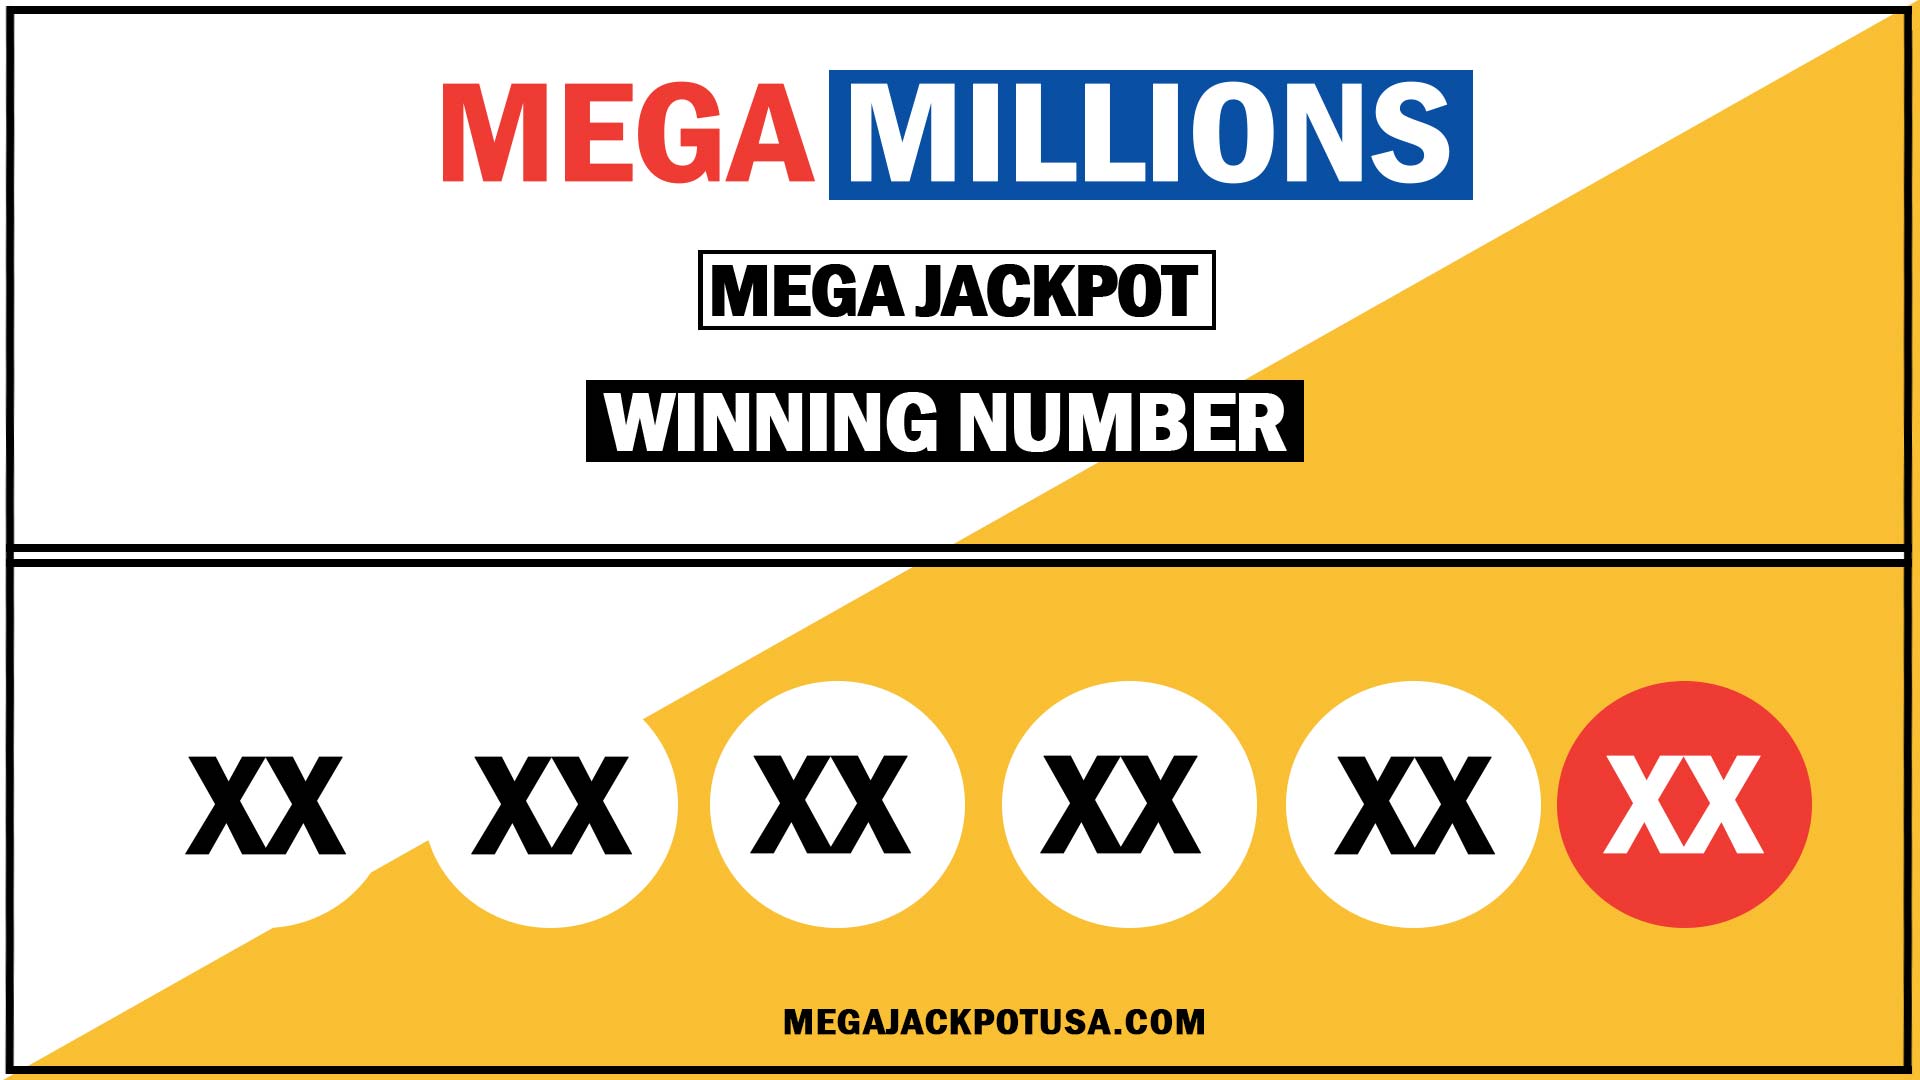 vermont mega millions past winning numbers